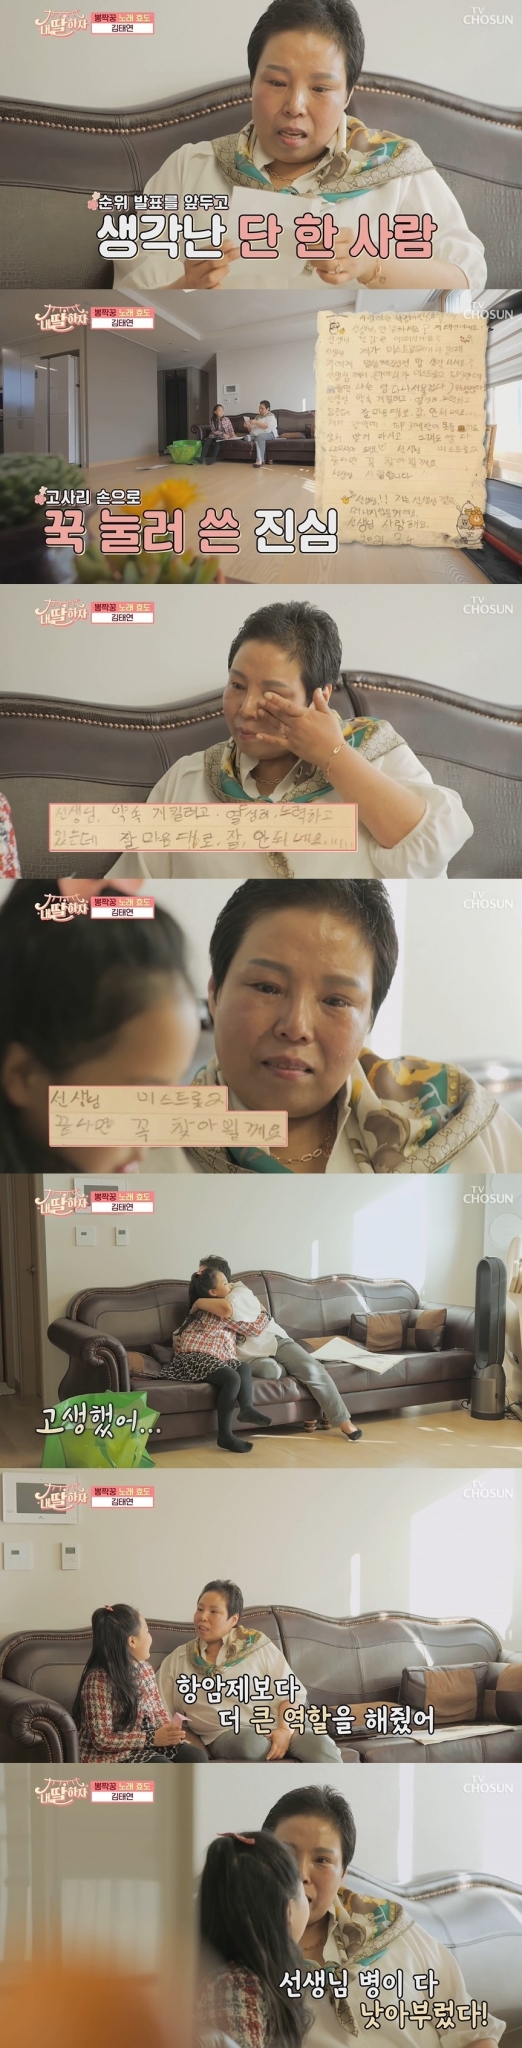 지난 9일 방송된 TV조선 '내딸하자'에서는 판소리 스승인 박정아 명창 집을 찾은 김태연의 모습이 그려졌다. /사진=TV조선 '내딸하자' 방송 캡처